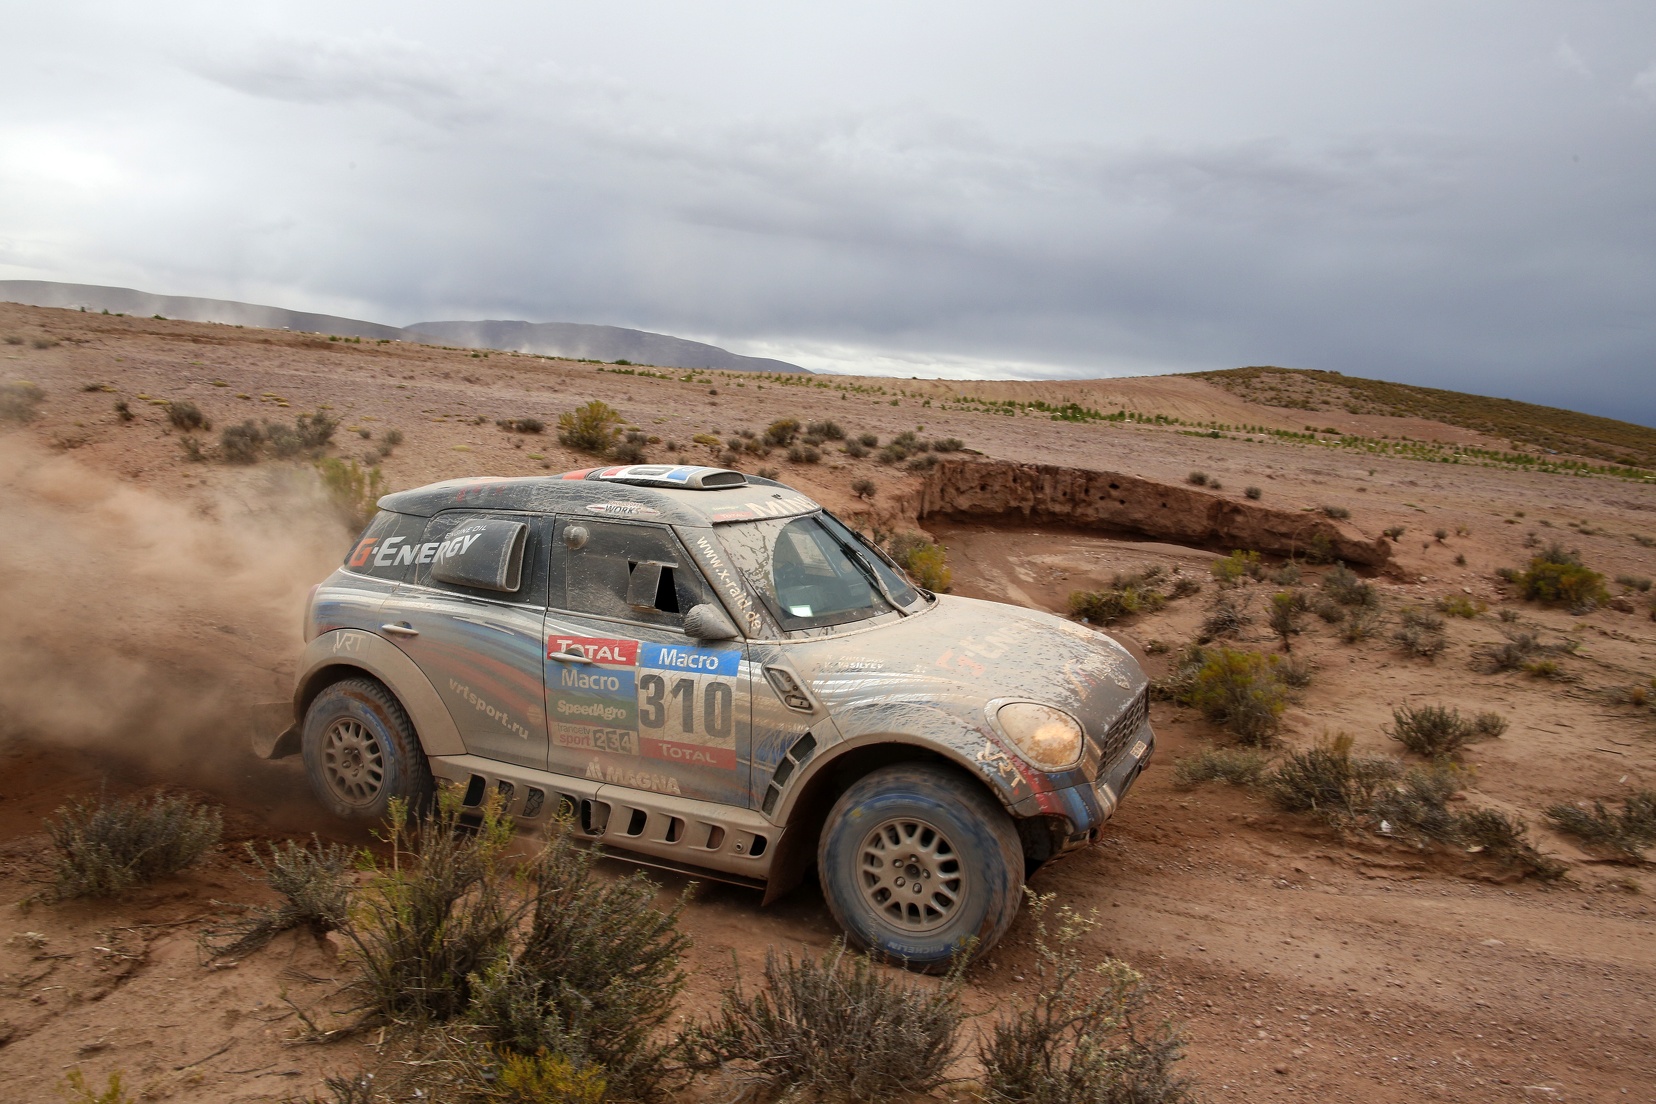  Mini al 2015 Dakar Rally: Nasser Al-Attiyah difende la sua posizione nella classifica generale